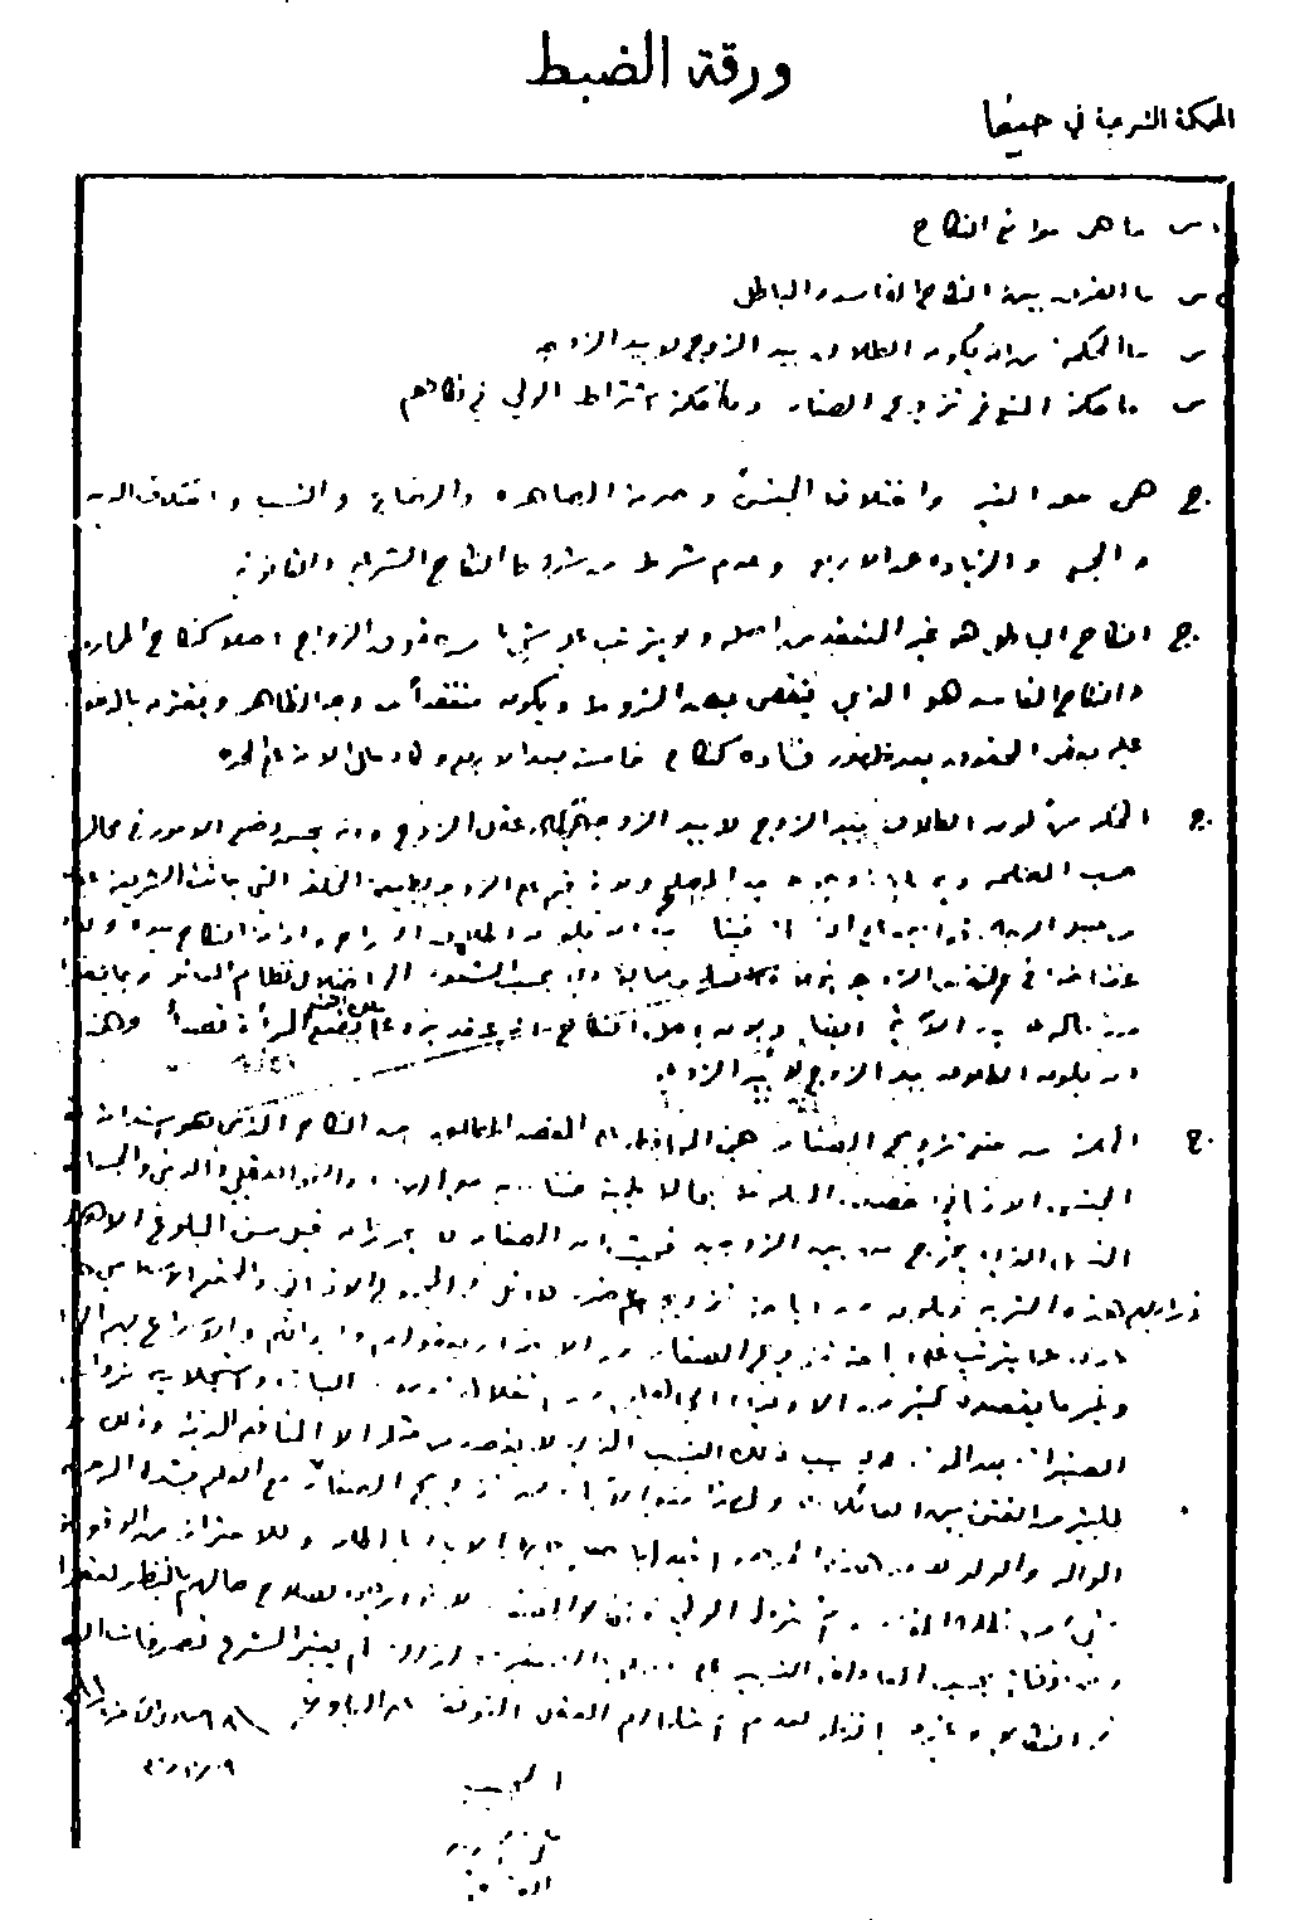 صورة ورقة الإجابة التي تقدم بها القسام لامتحان المحكمة الشرعية في حيفا، وهي بخط يده/ Wikipedia